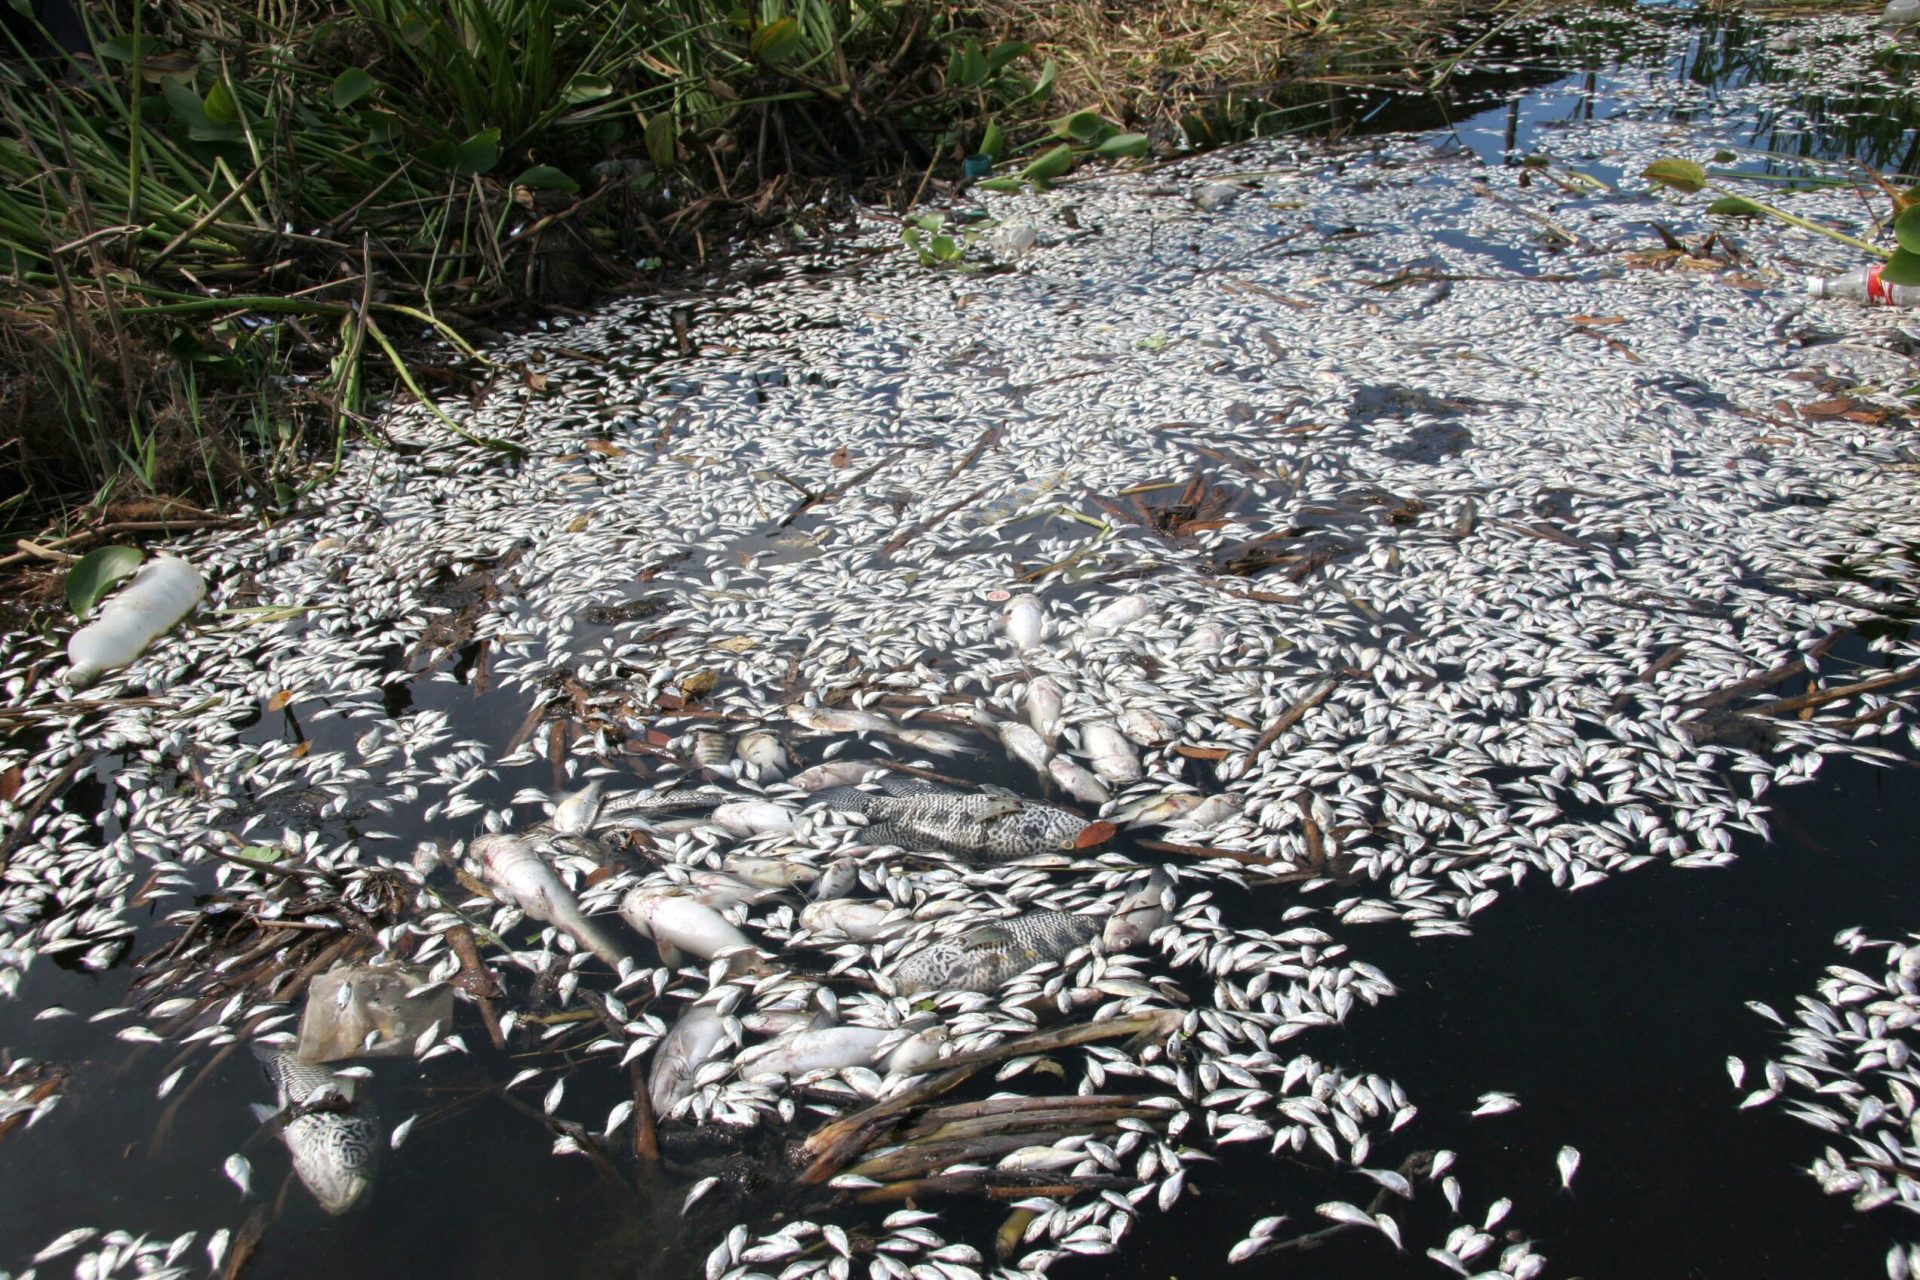 Cientos de peces muertos en el río de la Ranchería, provocado por un fenómeno conocido como "Barbasco", que deja sin oxigeno el agua, provocado por la mezcla del agua limpia con la contaminada.  EFE/Jaime Avalos